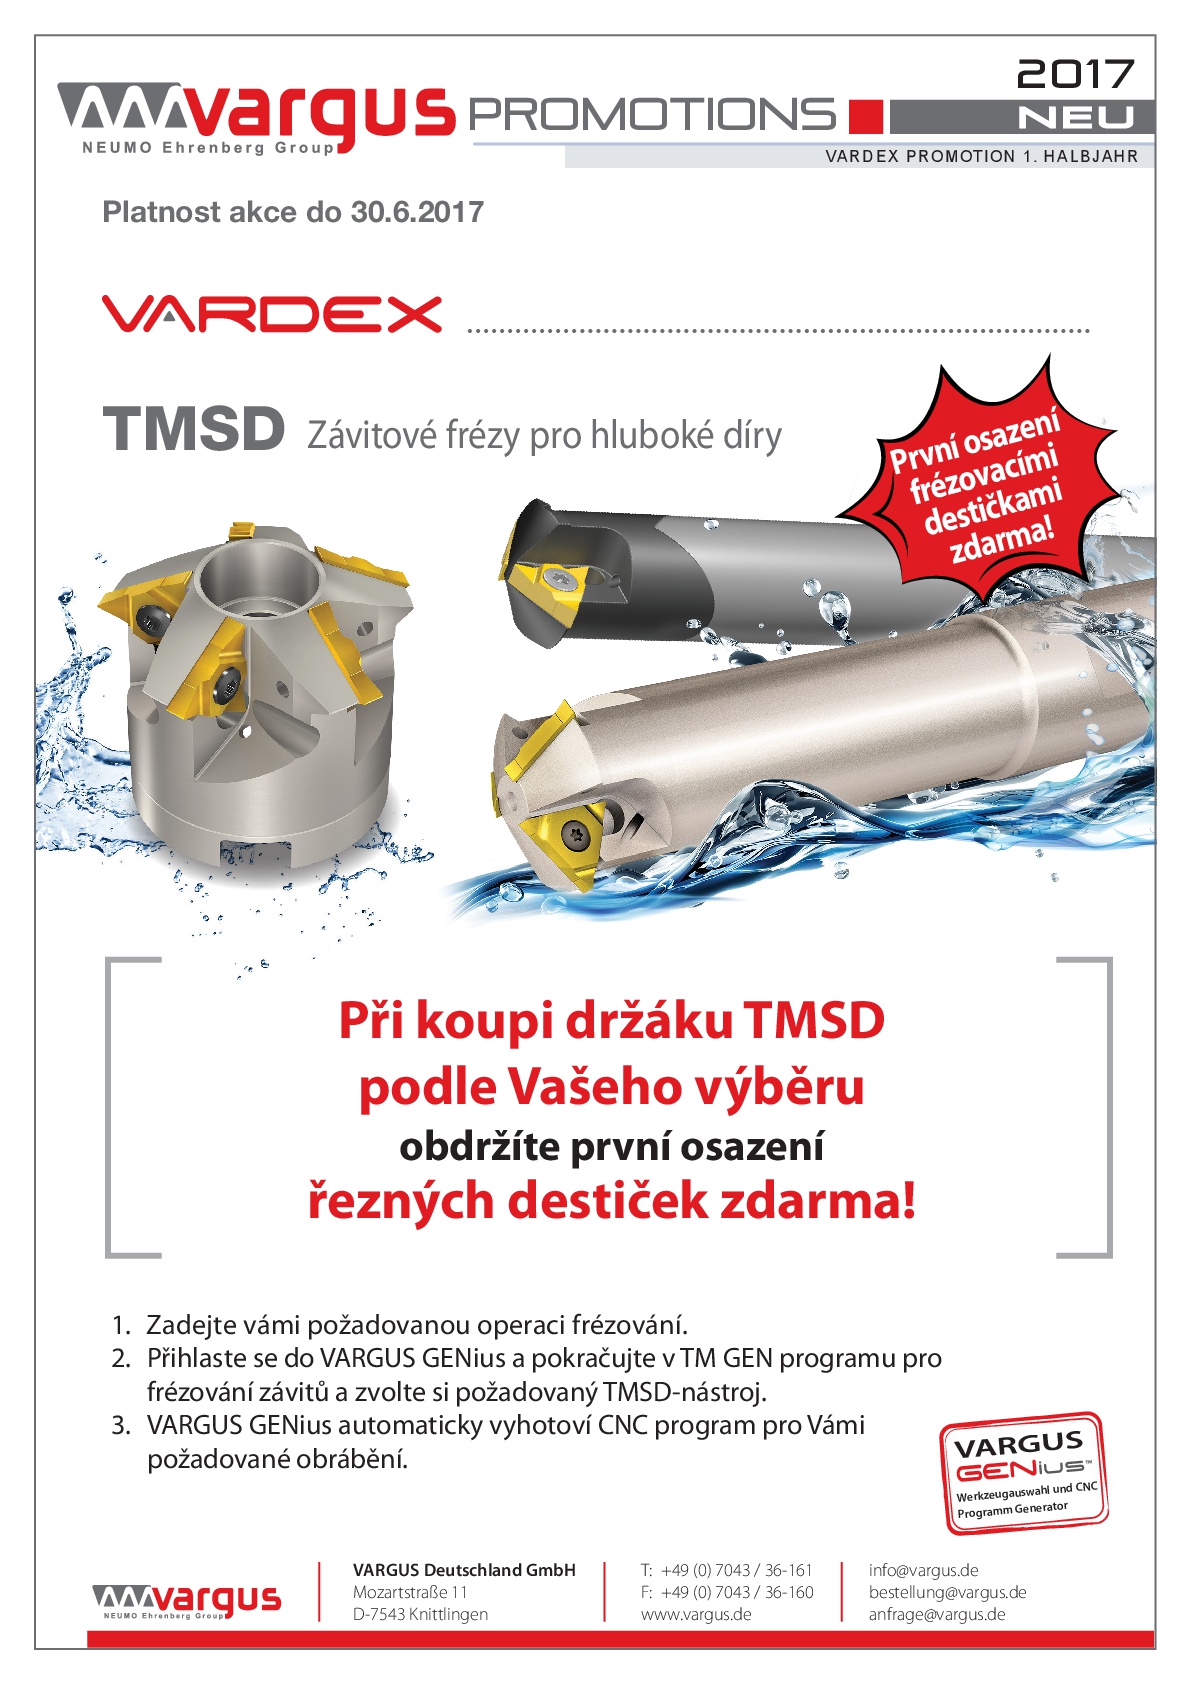 Vardex TMSD